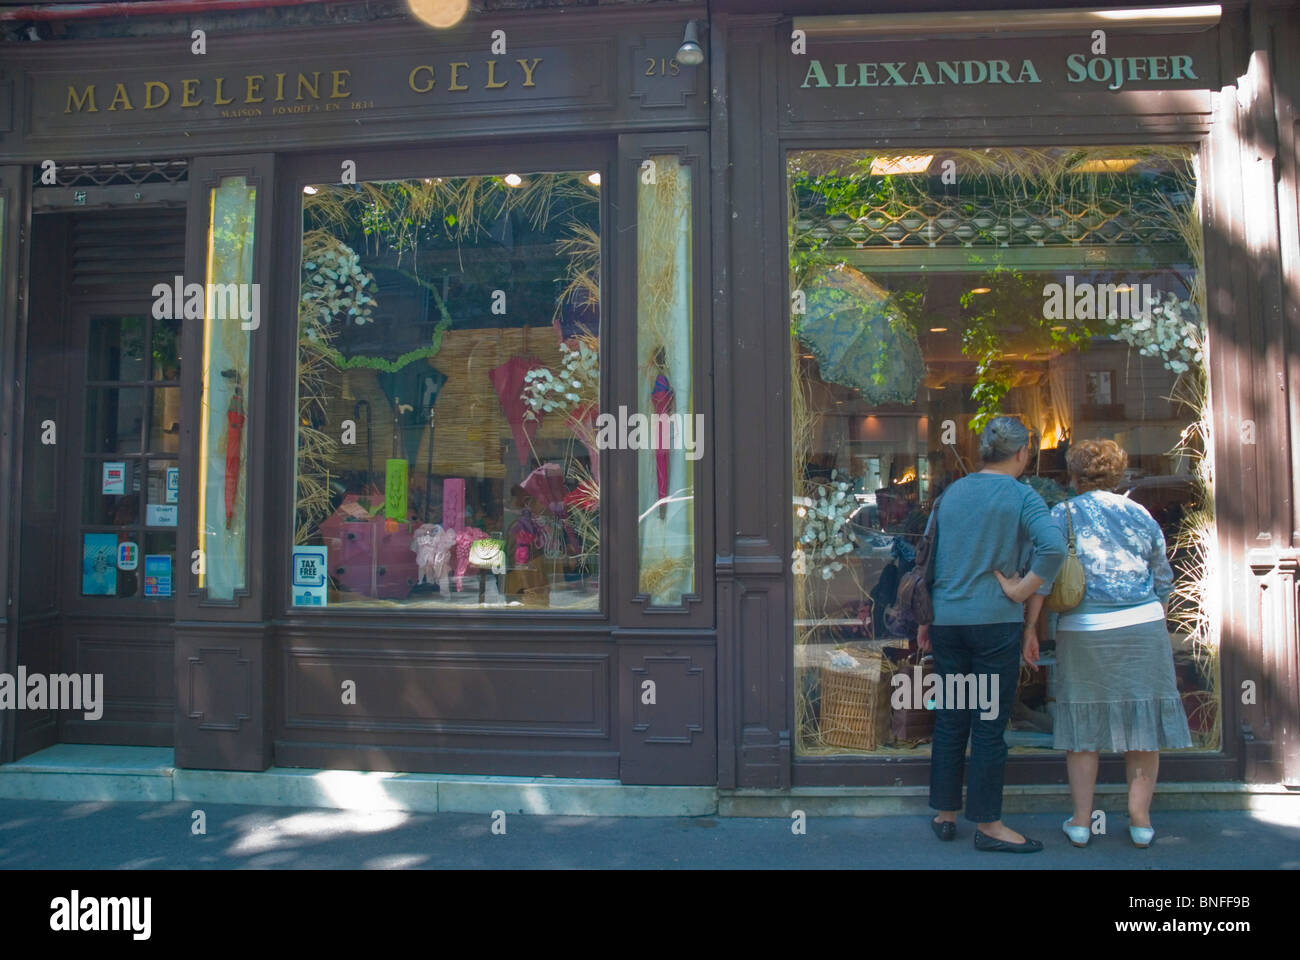 Frauen außerhalb Madeleine Gely Sonnenschirm und Spazierstock shop-St-Germain-des-Prés Paris Frankreich Europa Stockfoto